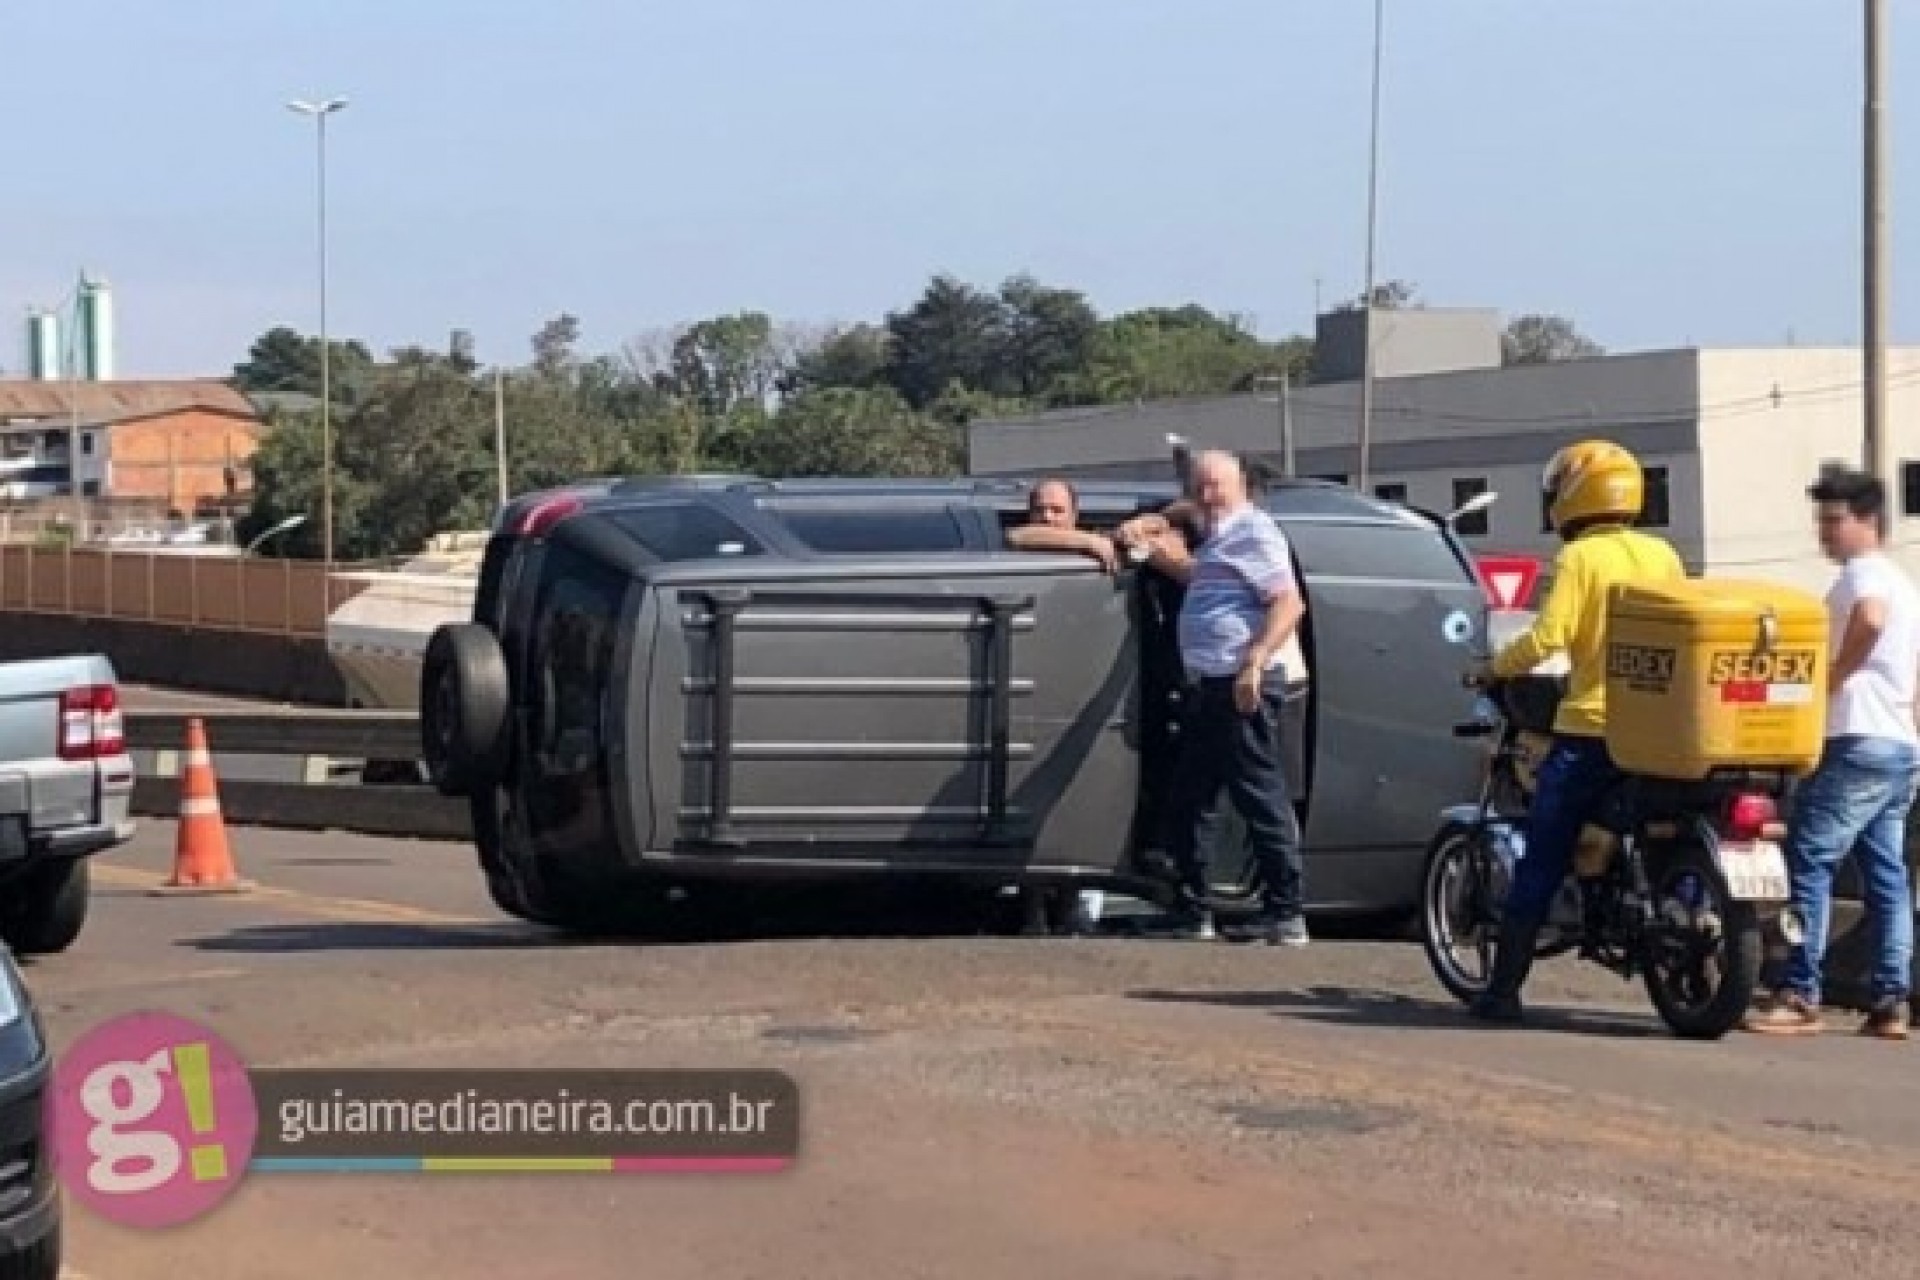 Medianeira: Após colidir em ônibus, motorista embriagado foge, capota veículo e acaba preso pela PM